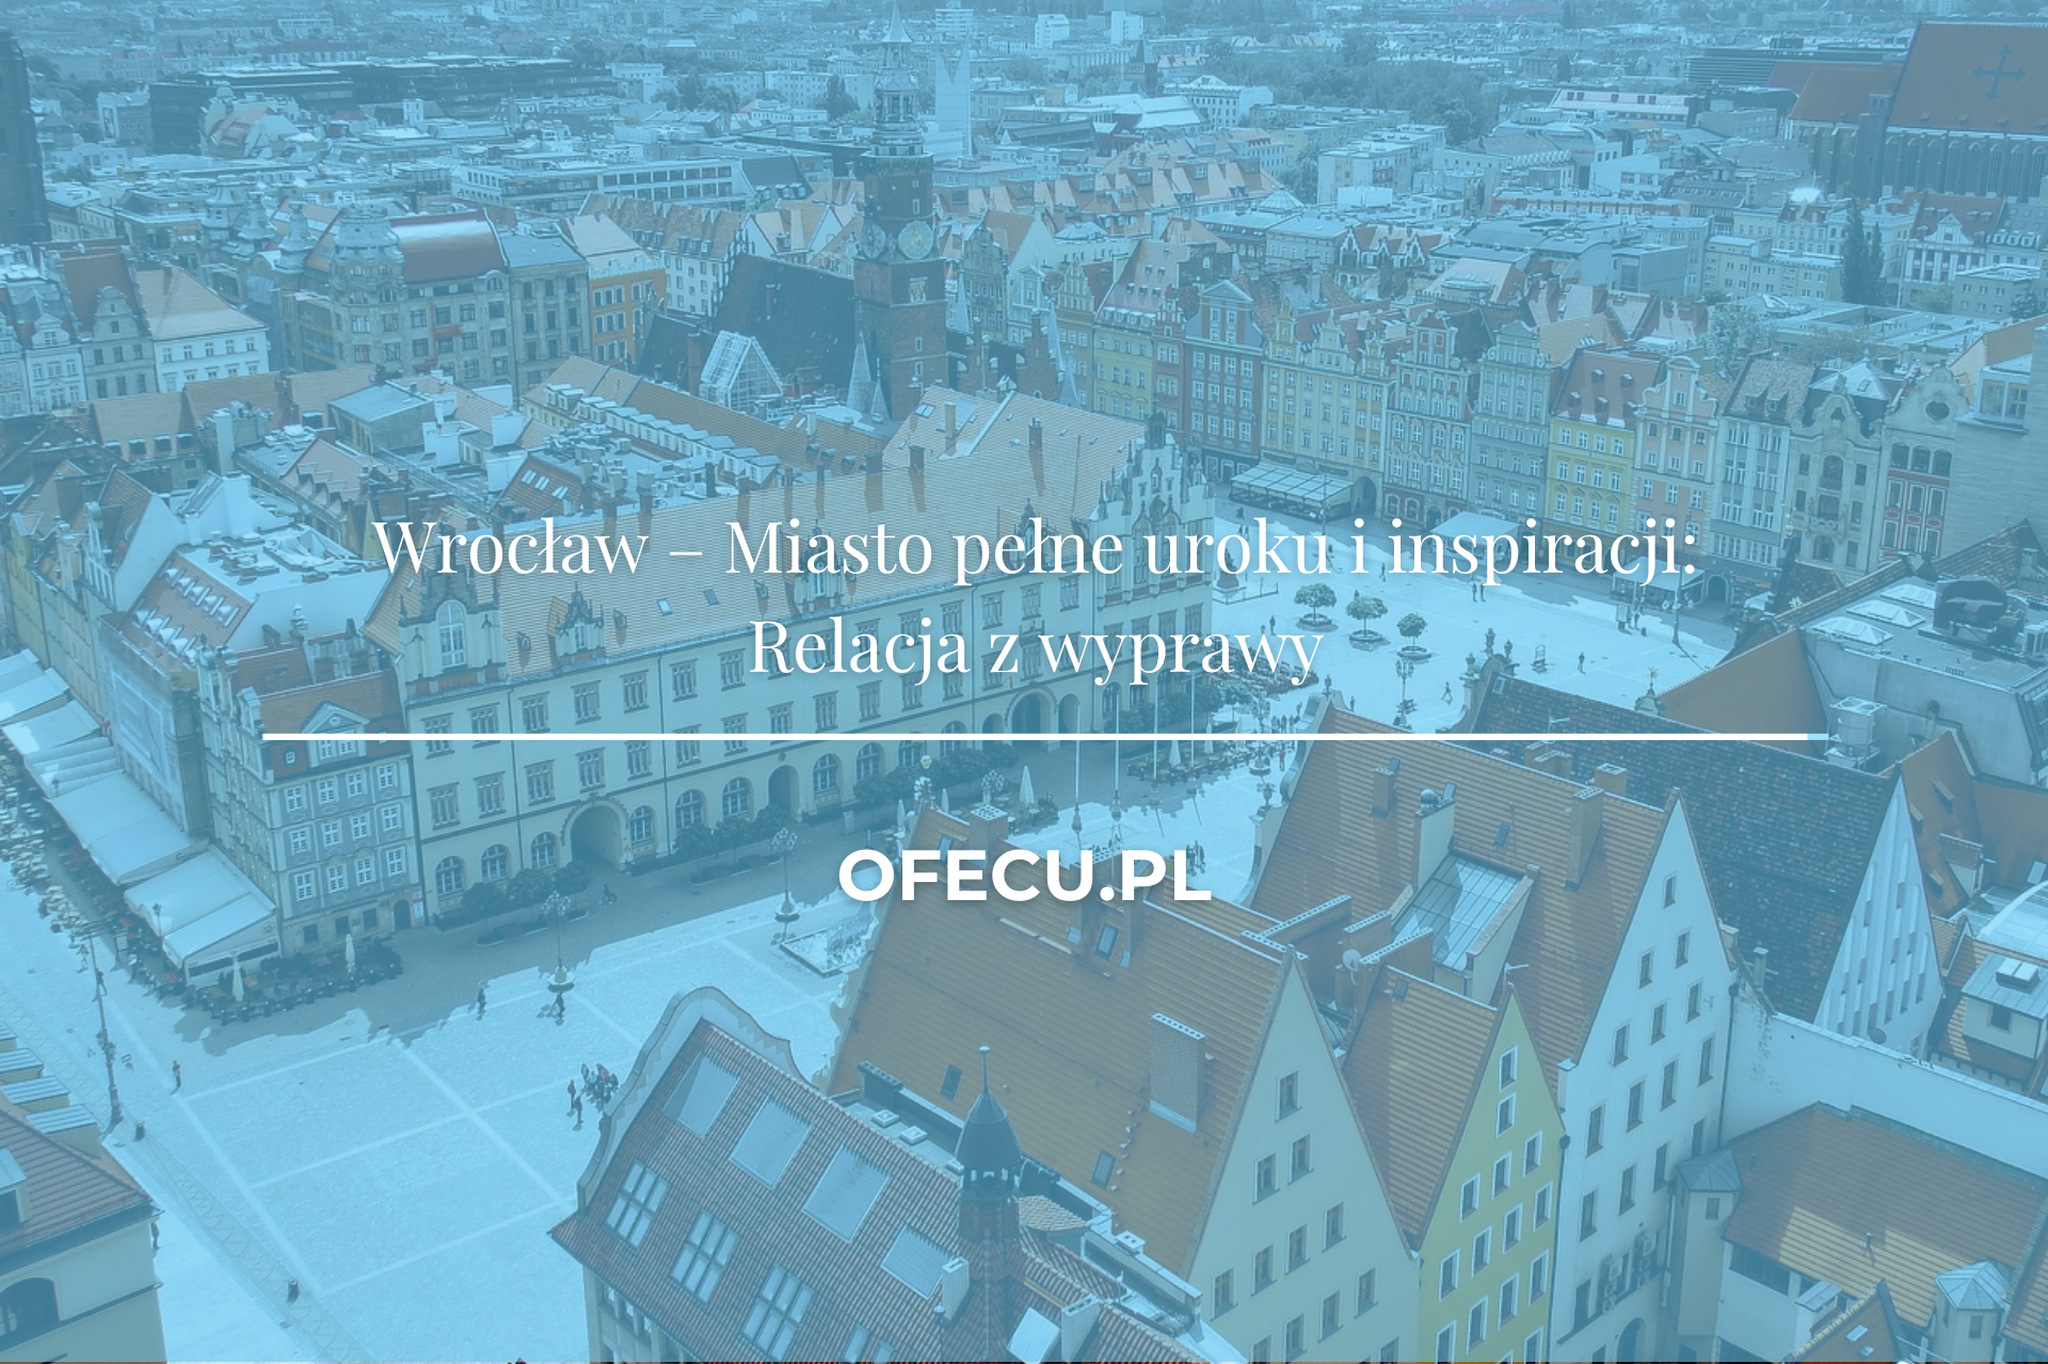 Wrocław – Miasto pełne uroku i inspiracji: Relacja z wyprawy